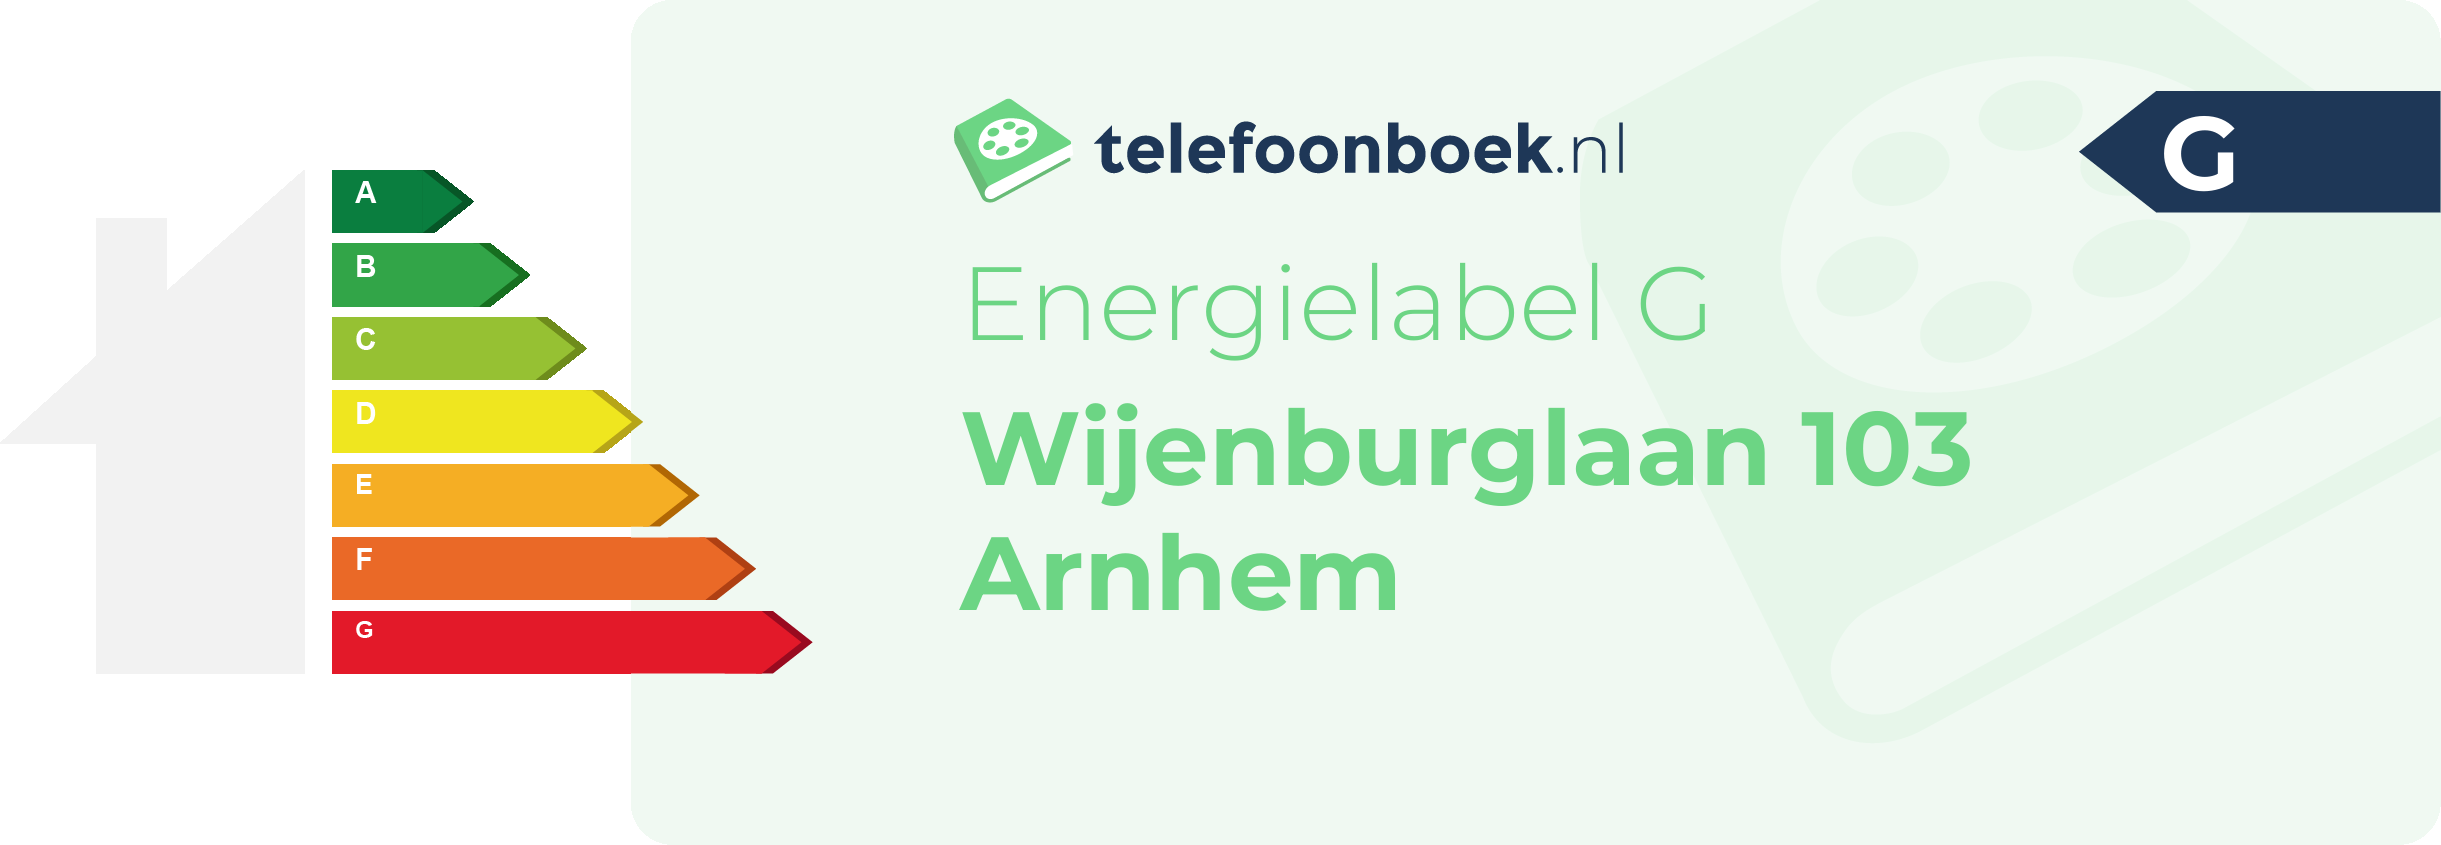 Energielabel Wijenburglaan 103 Arnhem